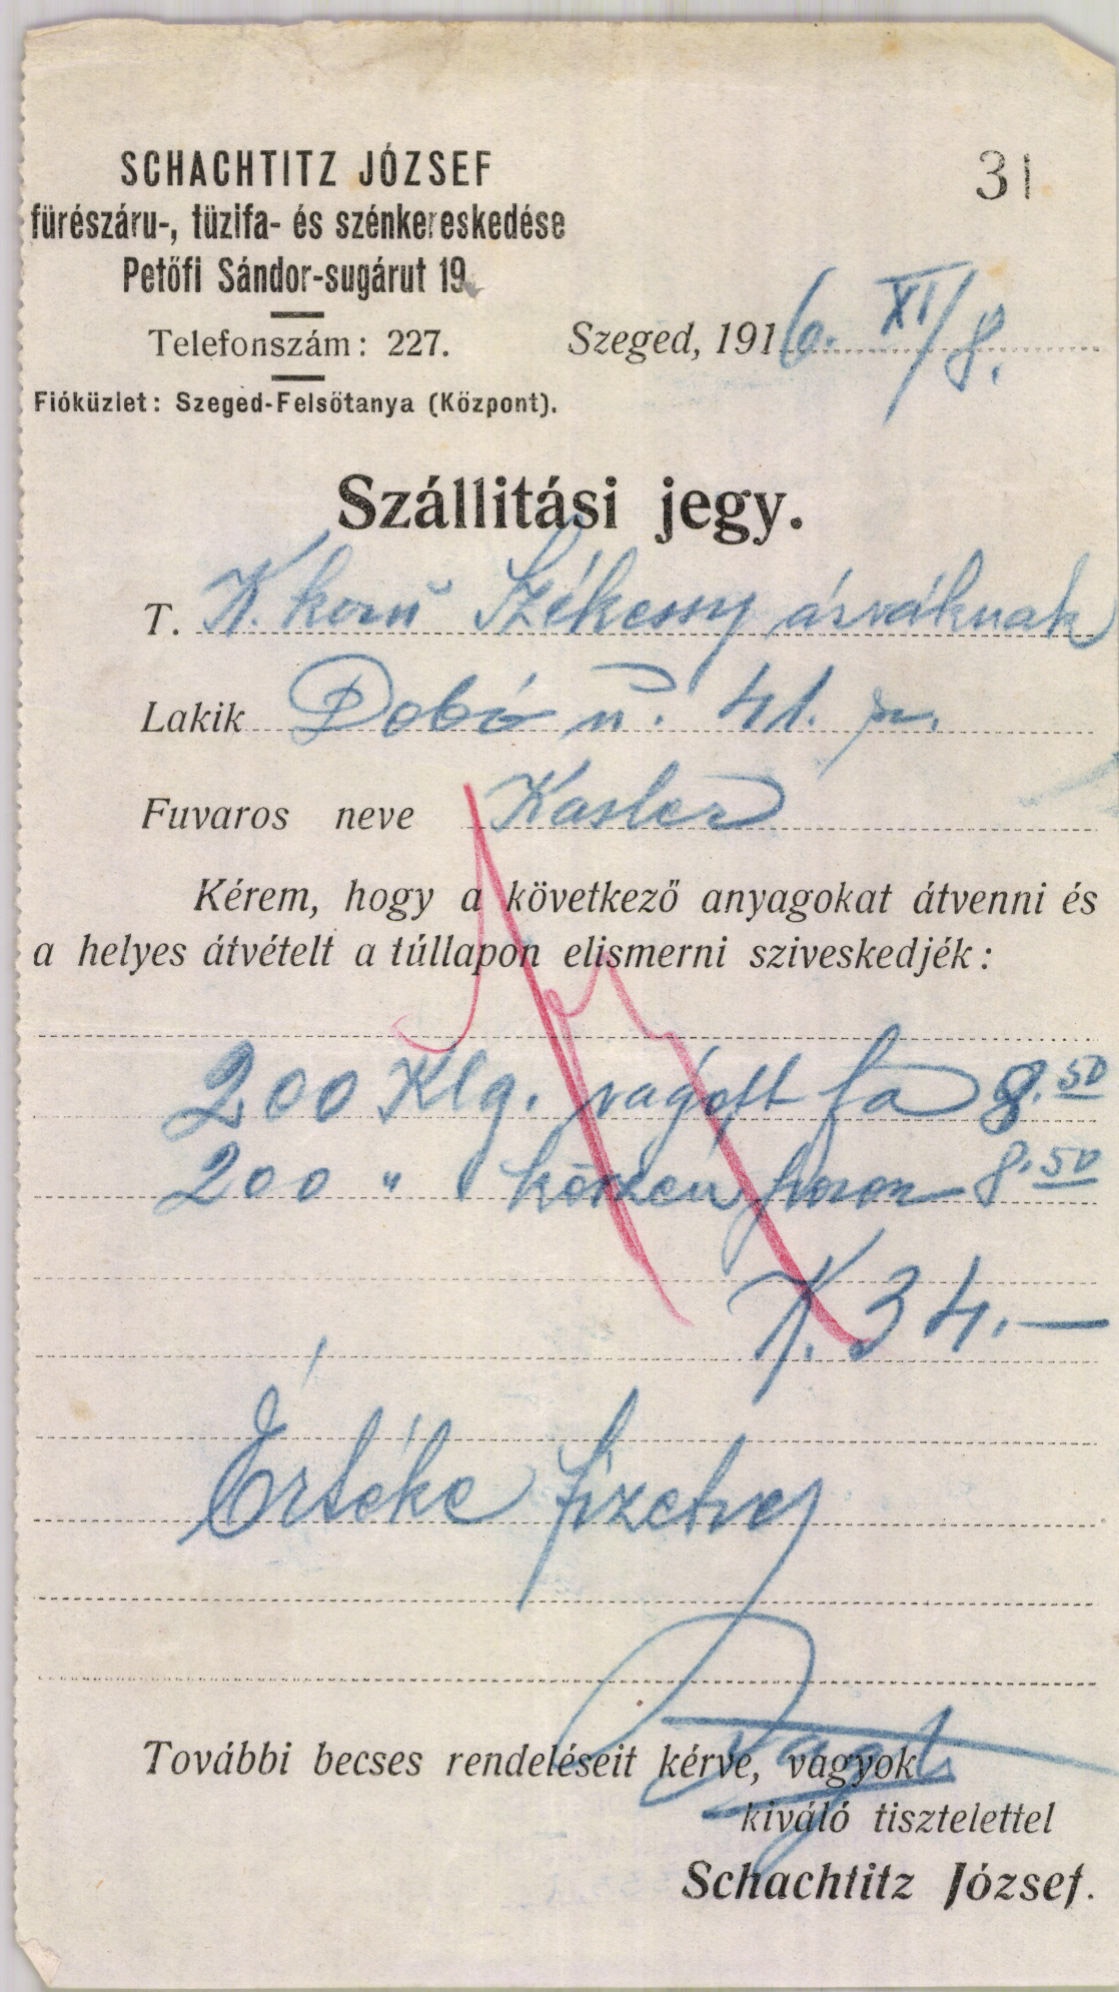 Schachtitz József fűrészáru-, tüzifa- és szénkereskedése (Magyar Kereskedelmi és Vendéglátóipari Múzeum CC BY-NC-SA)